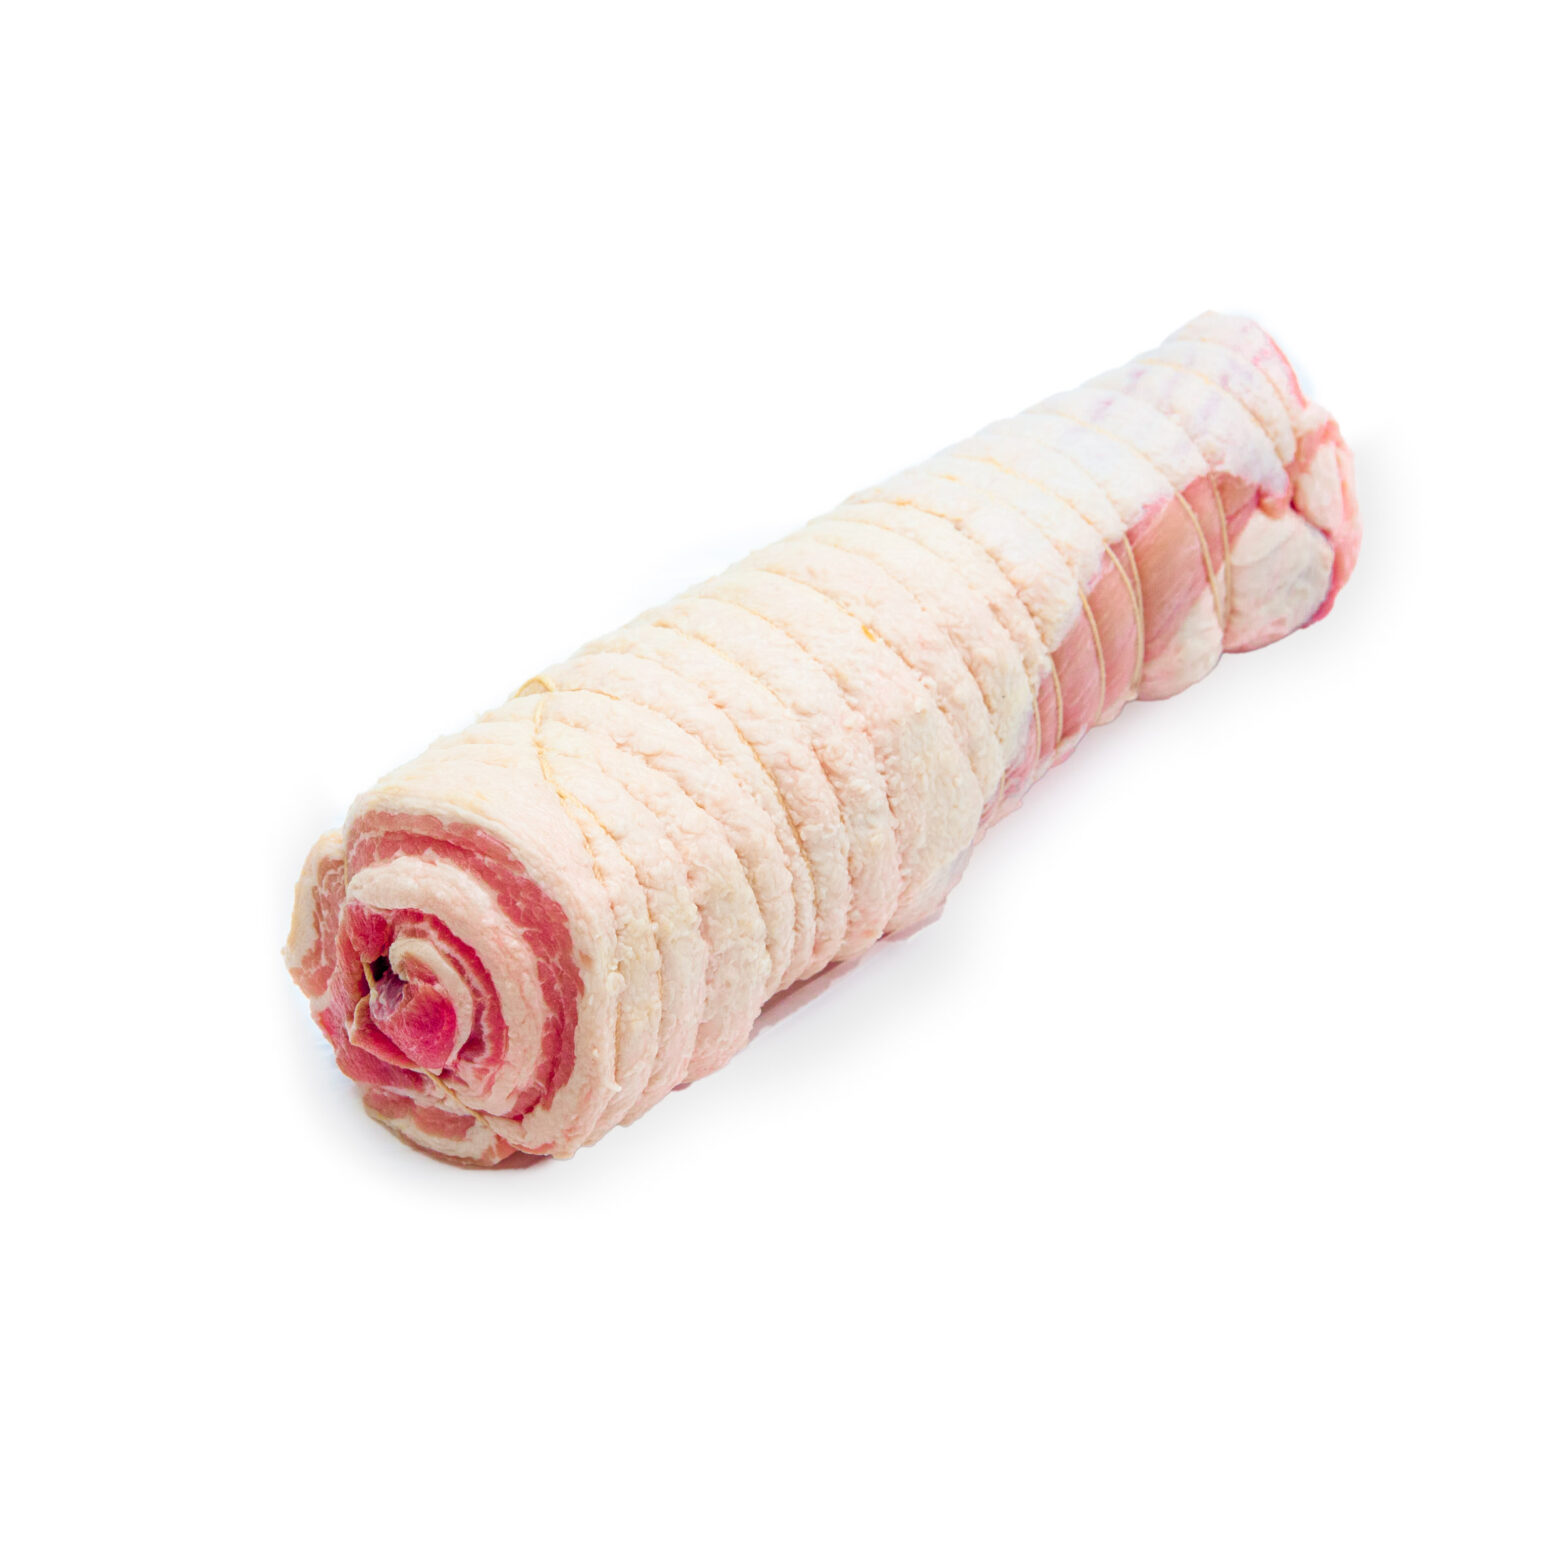 冷凍豚バラ糸巻き